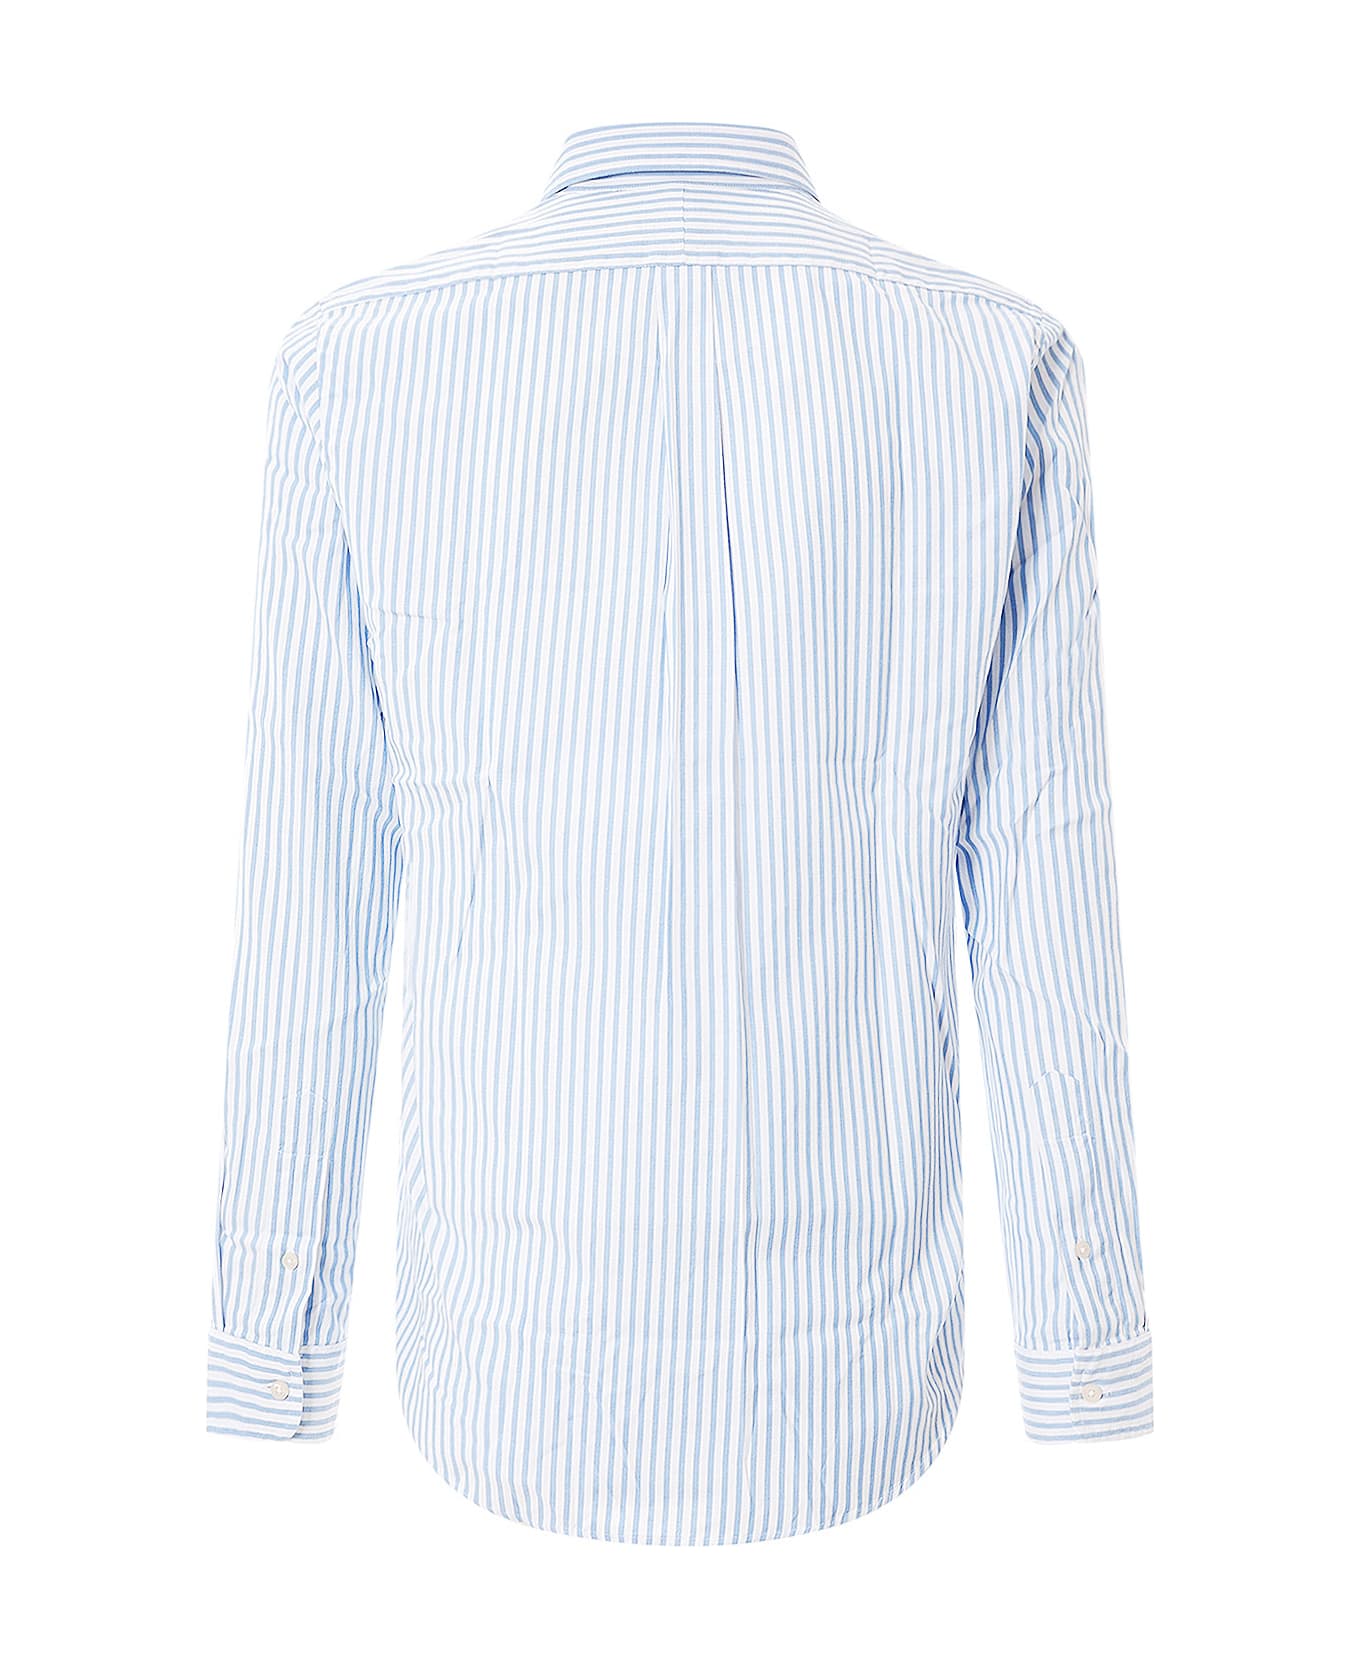 Ralph Lauren Shirt - Blue White